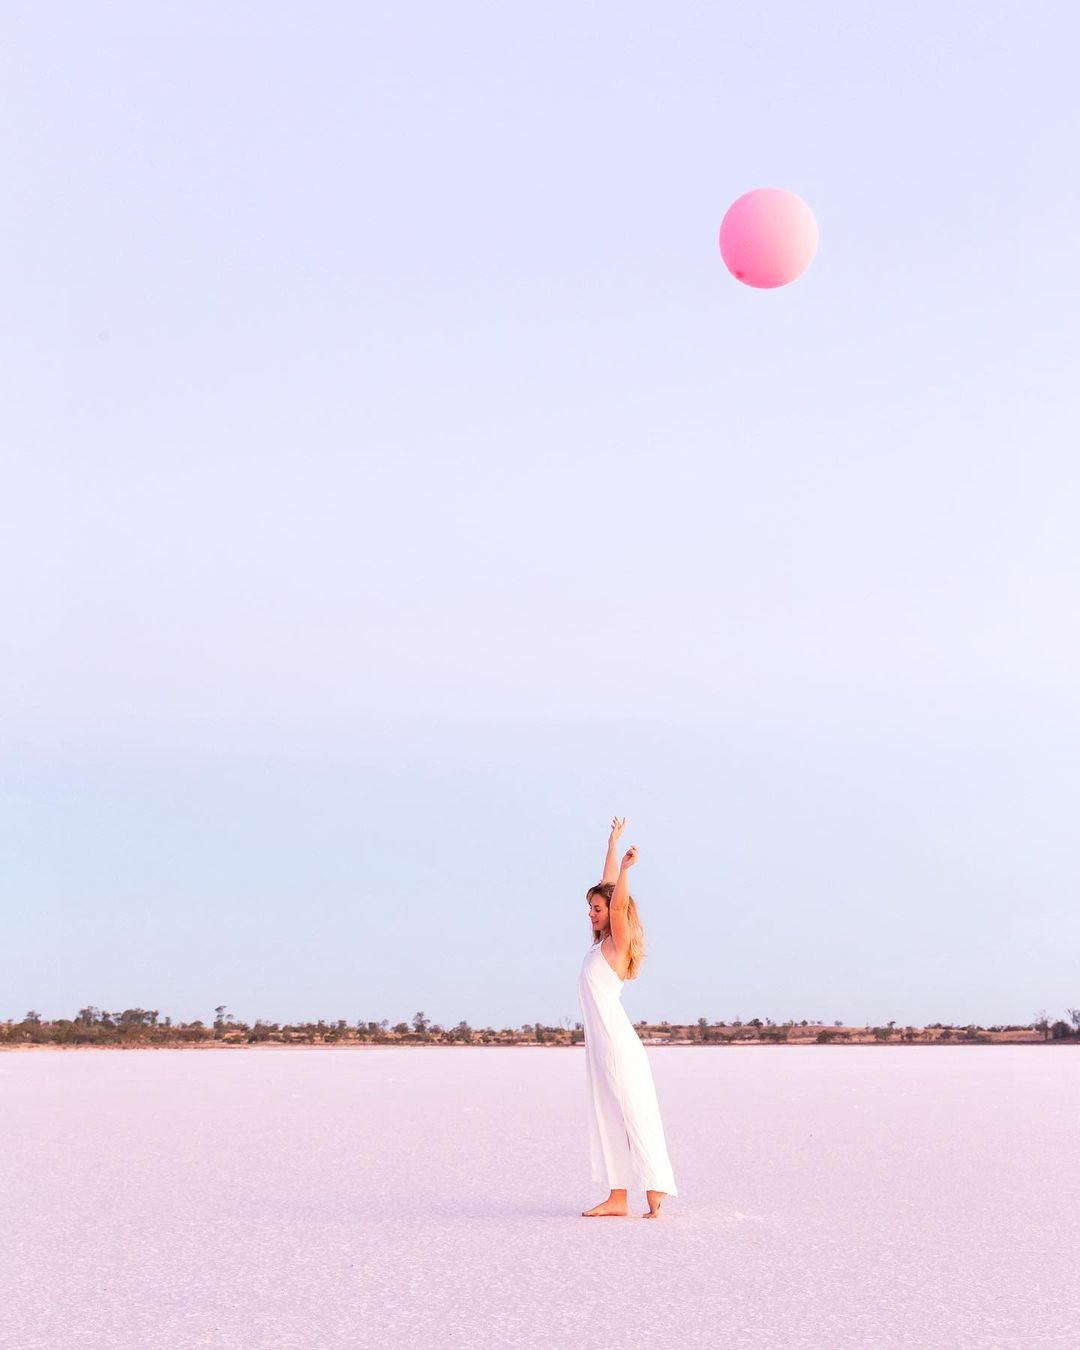 Очаровательное розовое озеро в Австралии, привлекающее туристов